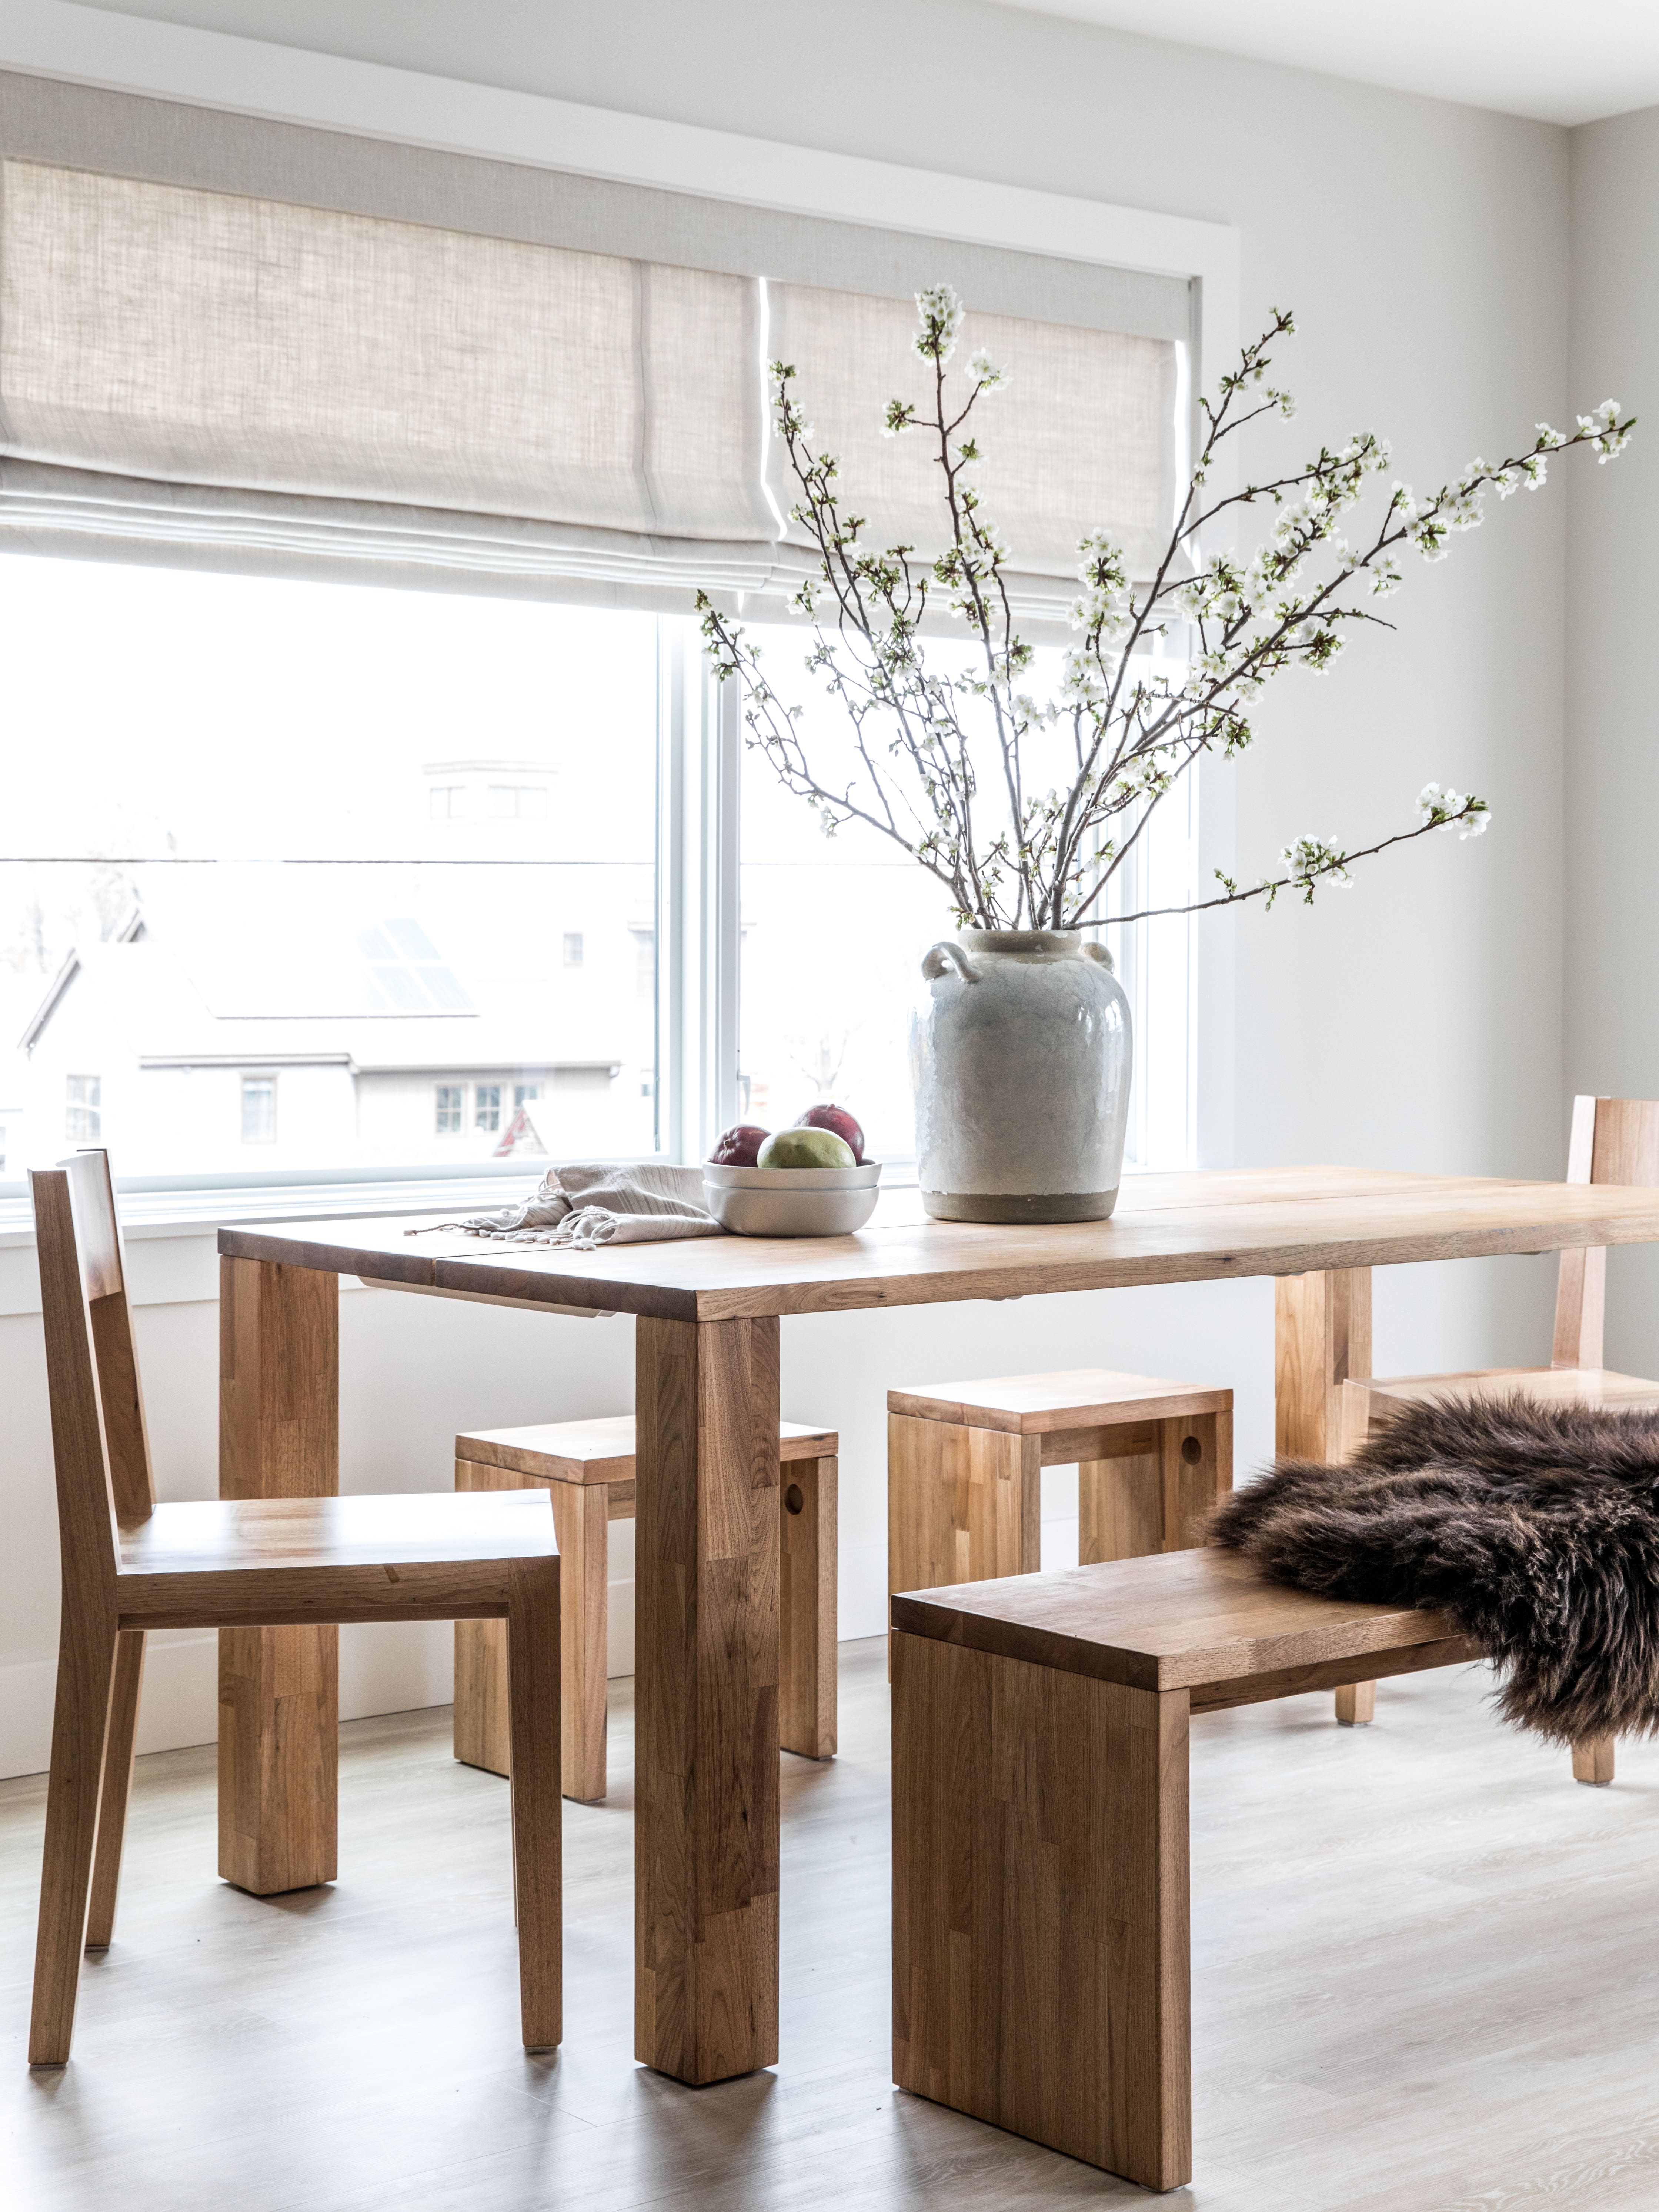 This Zen Maine Home Effortlessly Marries Wabi-Sabi and Scandinavian Design